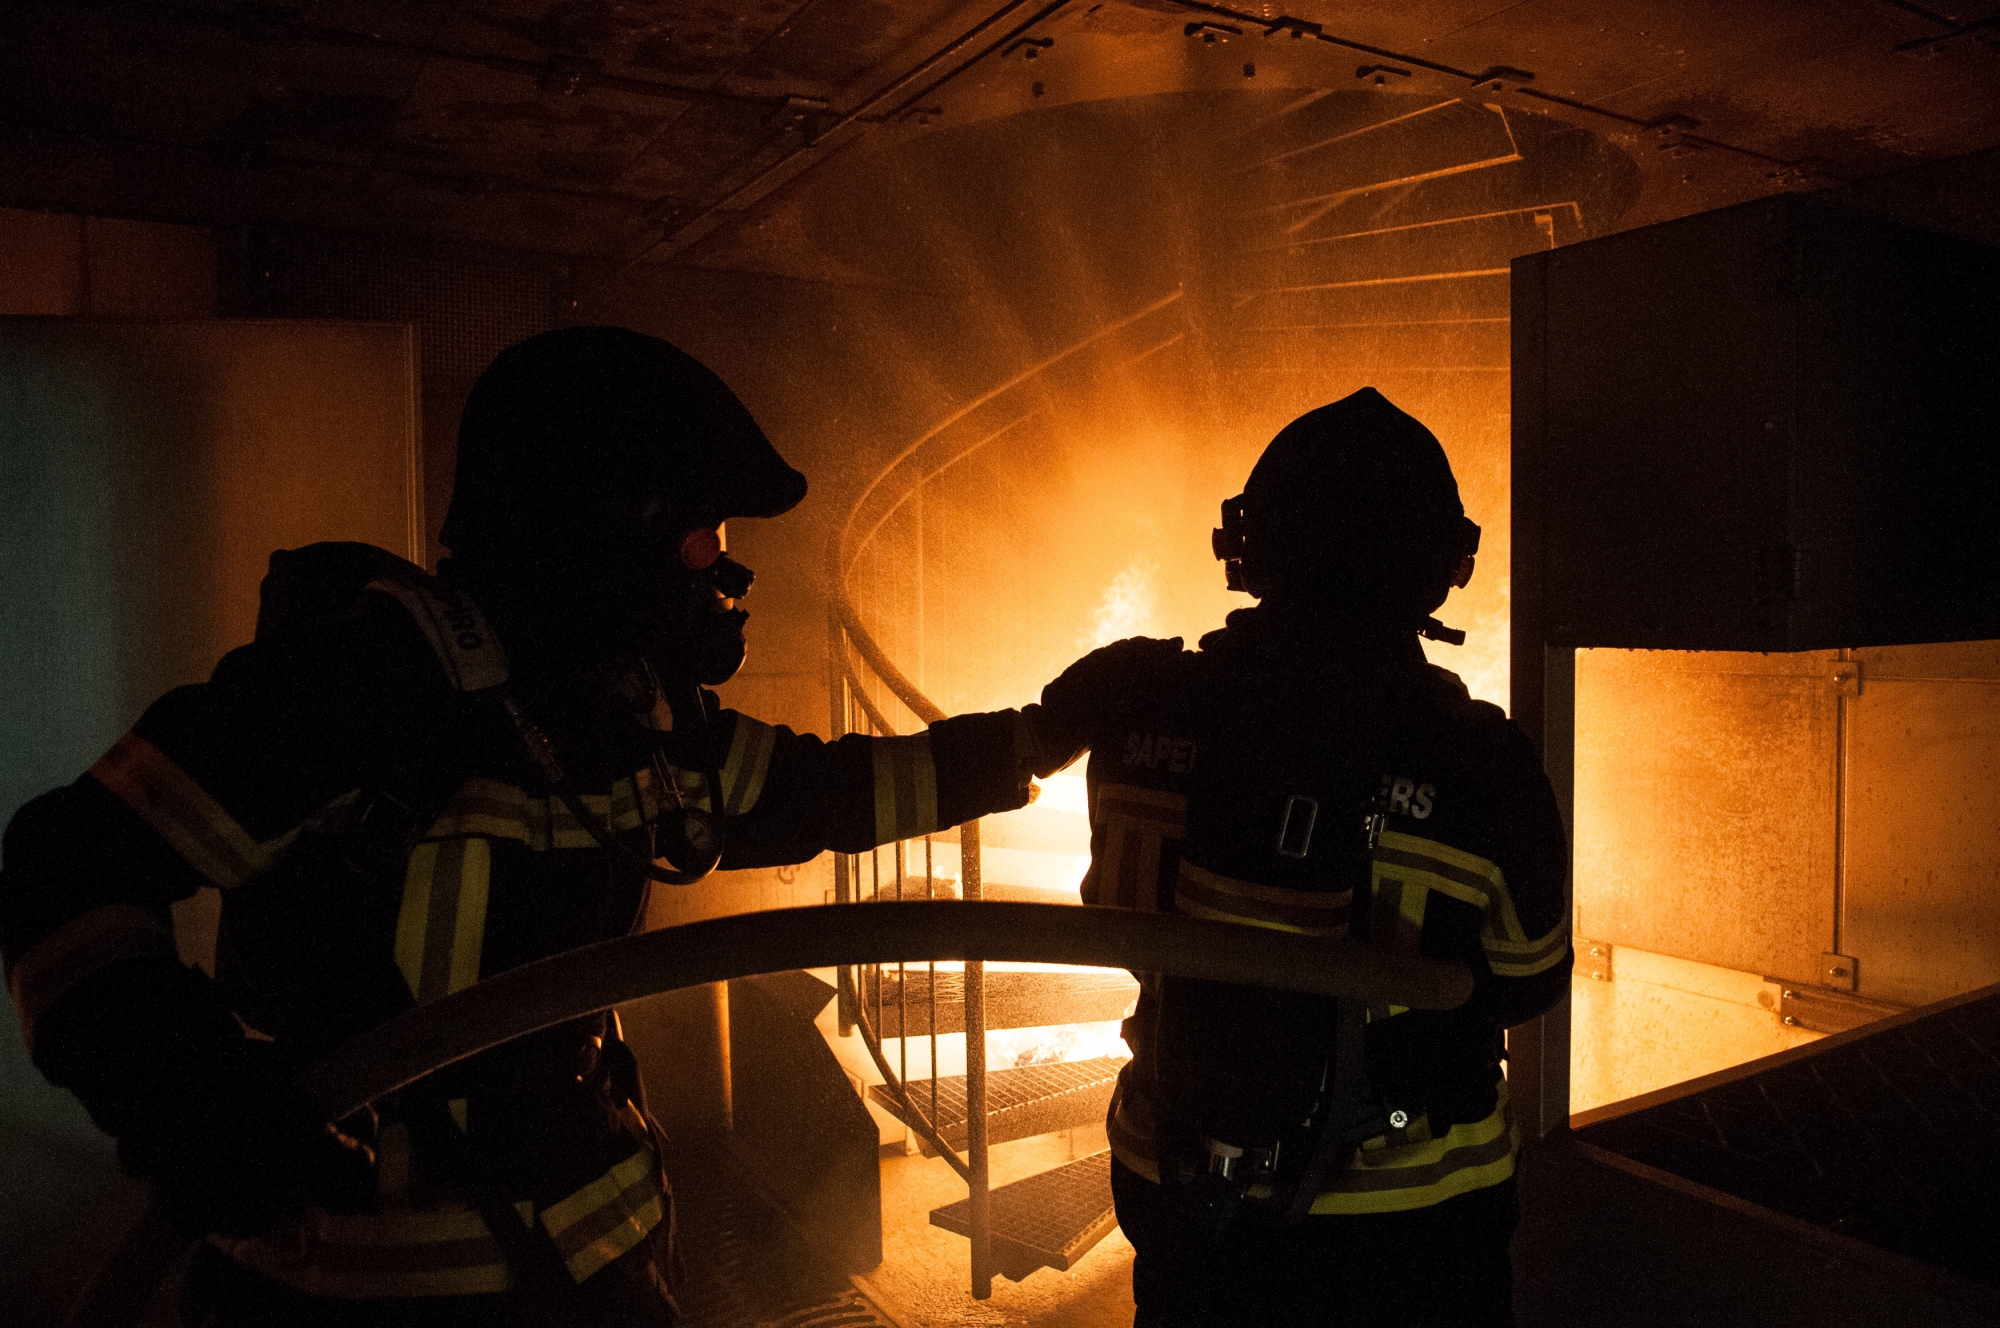 Les pompiers du pays sont réunis au sein d'une association faîtière qui a pour objectif d'uniformiser les formations et le matériel, ainsi que d'assurer la défense de leurs intérêts.